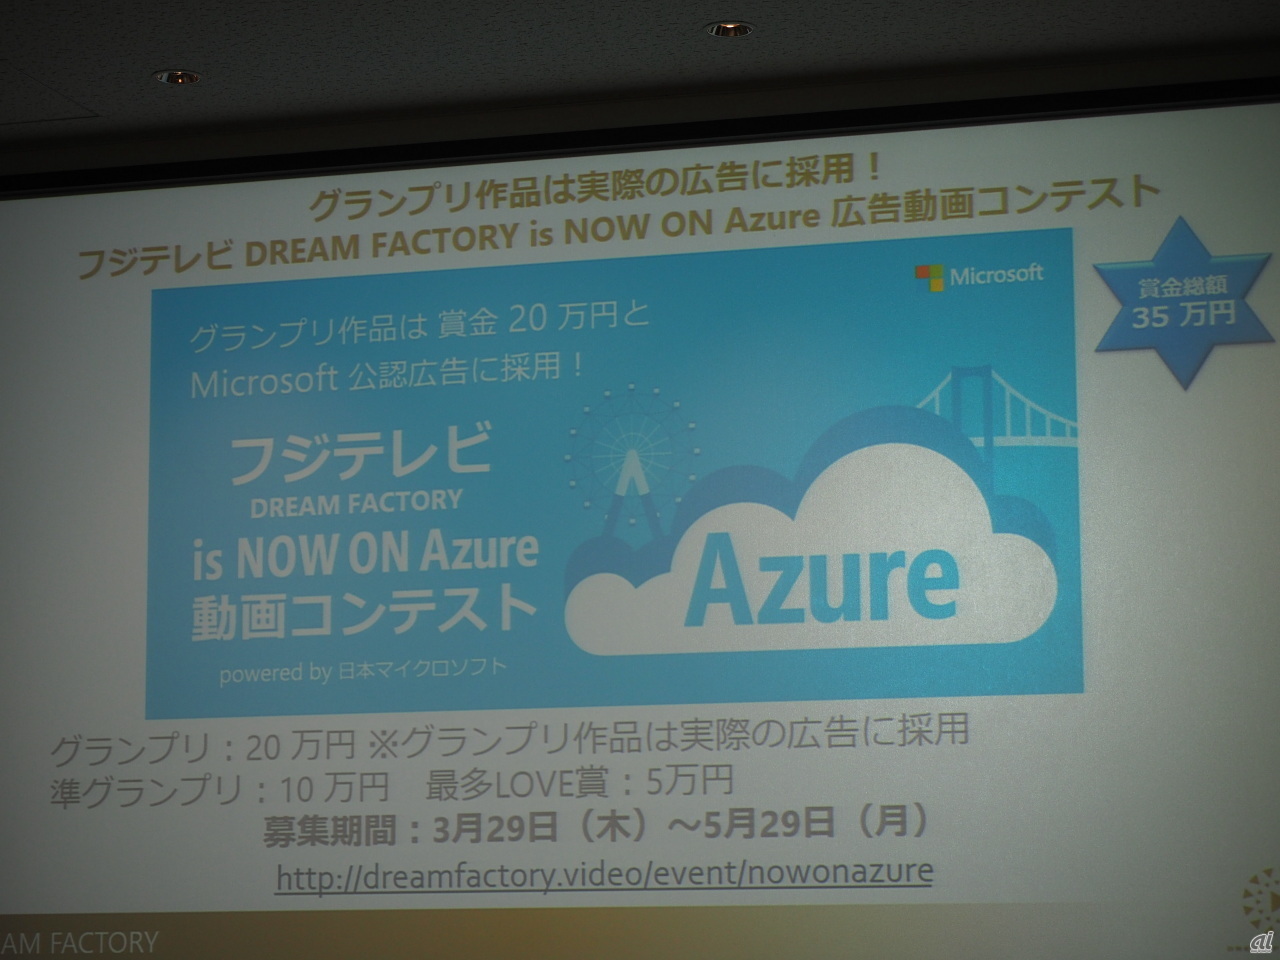 「フジテレビ DREAM FACTORY is NOW ON Azure 広告動画コンテスト powered by 日本マイクロソフト」